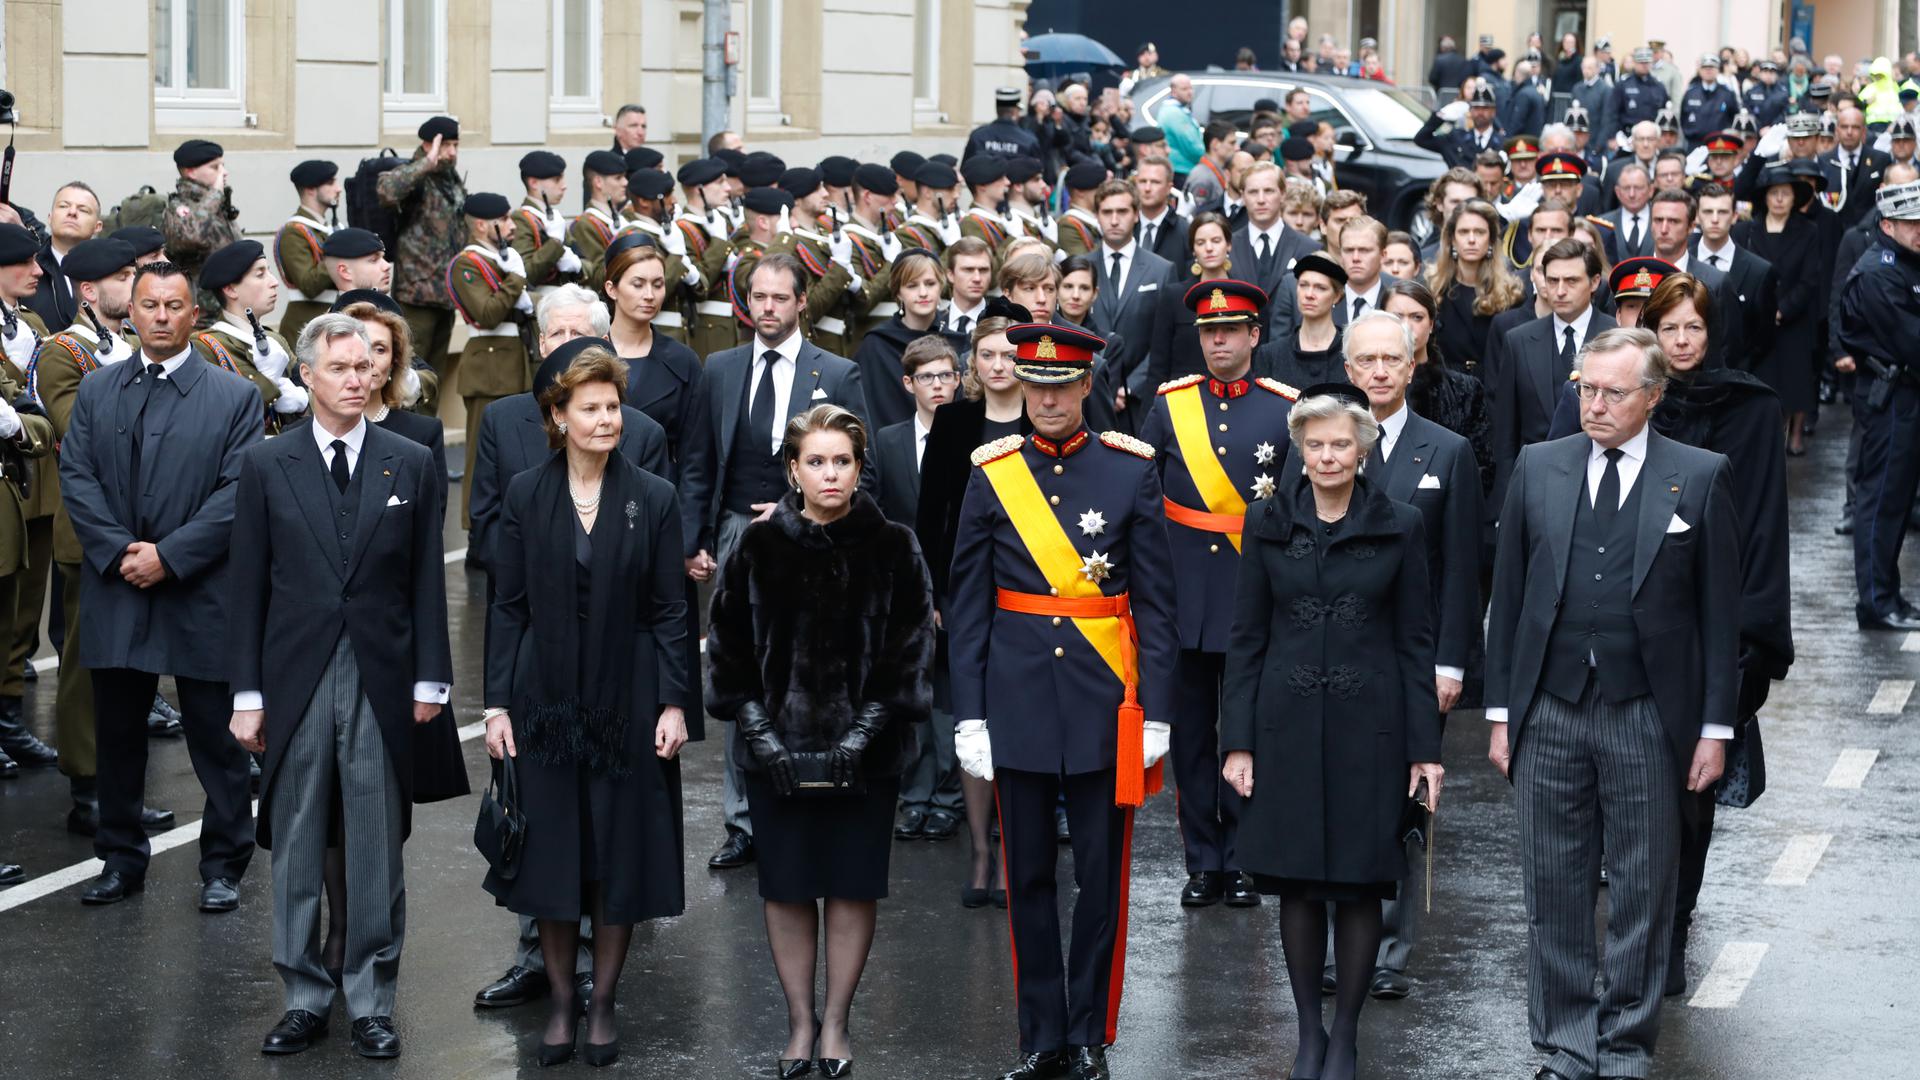 Die großherzogliche Familie mit dem großherzoglichen Paar an der Spitze marschierte hinter dem Sarg von Jean.